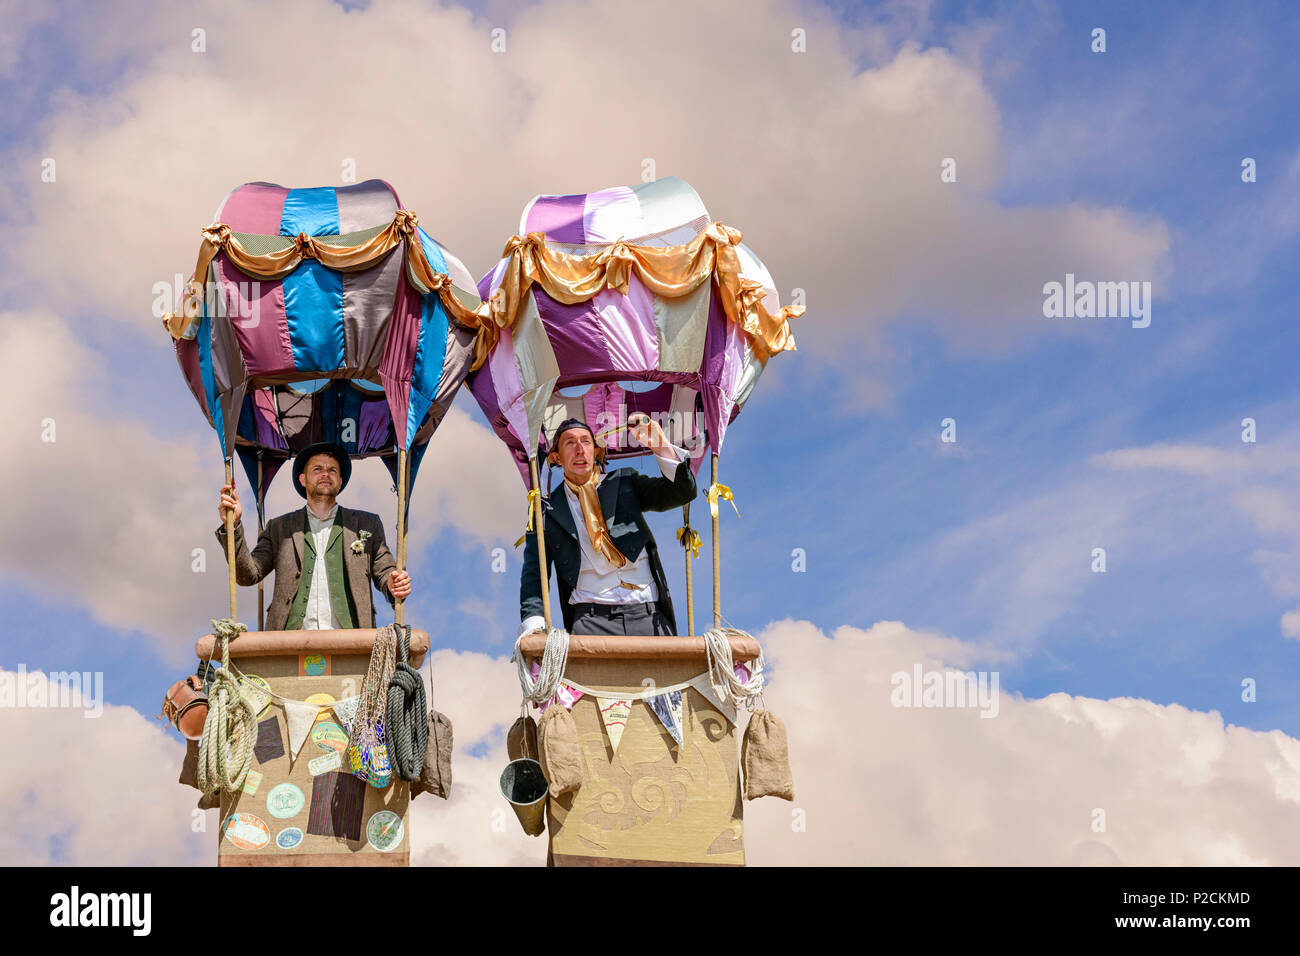 Zwei Straße entertaines in fiktiven Heißluftballons Stockfoto